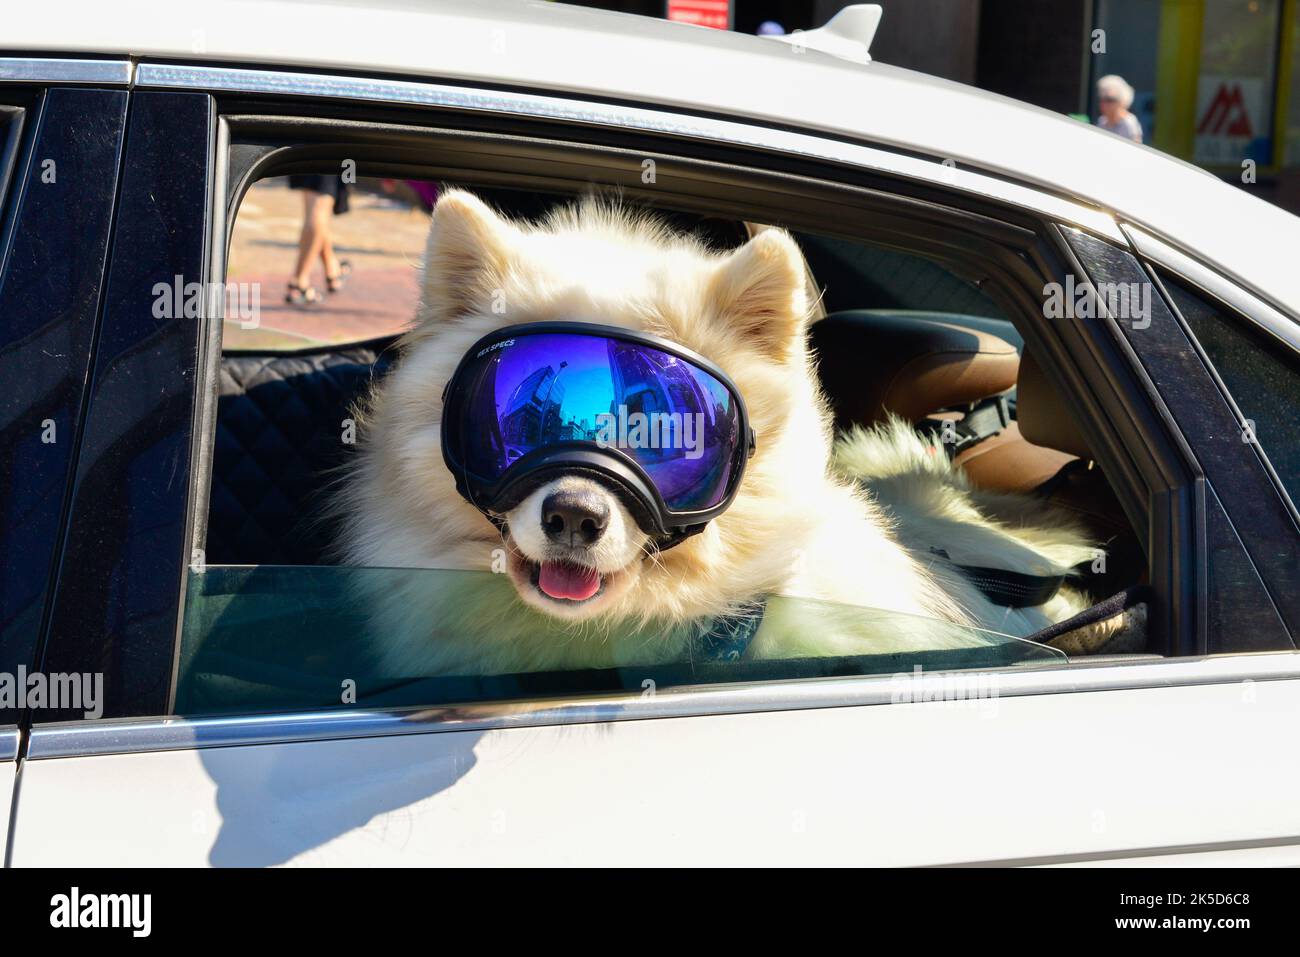 Un grand chien blanc Samoyed ou un husky en Sibérie portant de grands lunettes de ski ou un masque réfléchissant bleu. Le chien est suspendu par l'arrière d'une fenêtre de voiture blanche. Banque D'Images